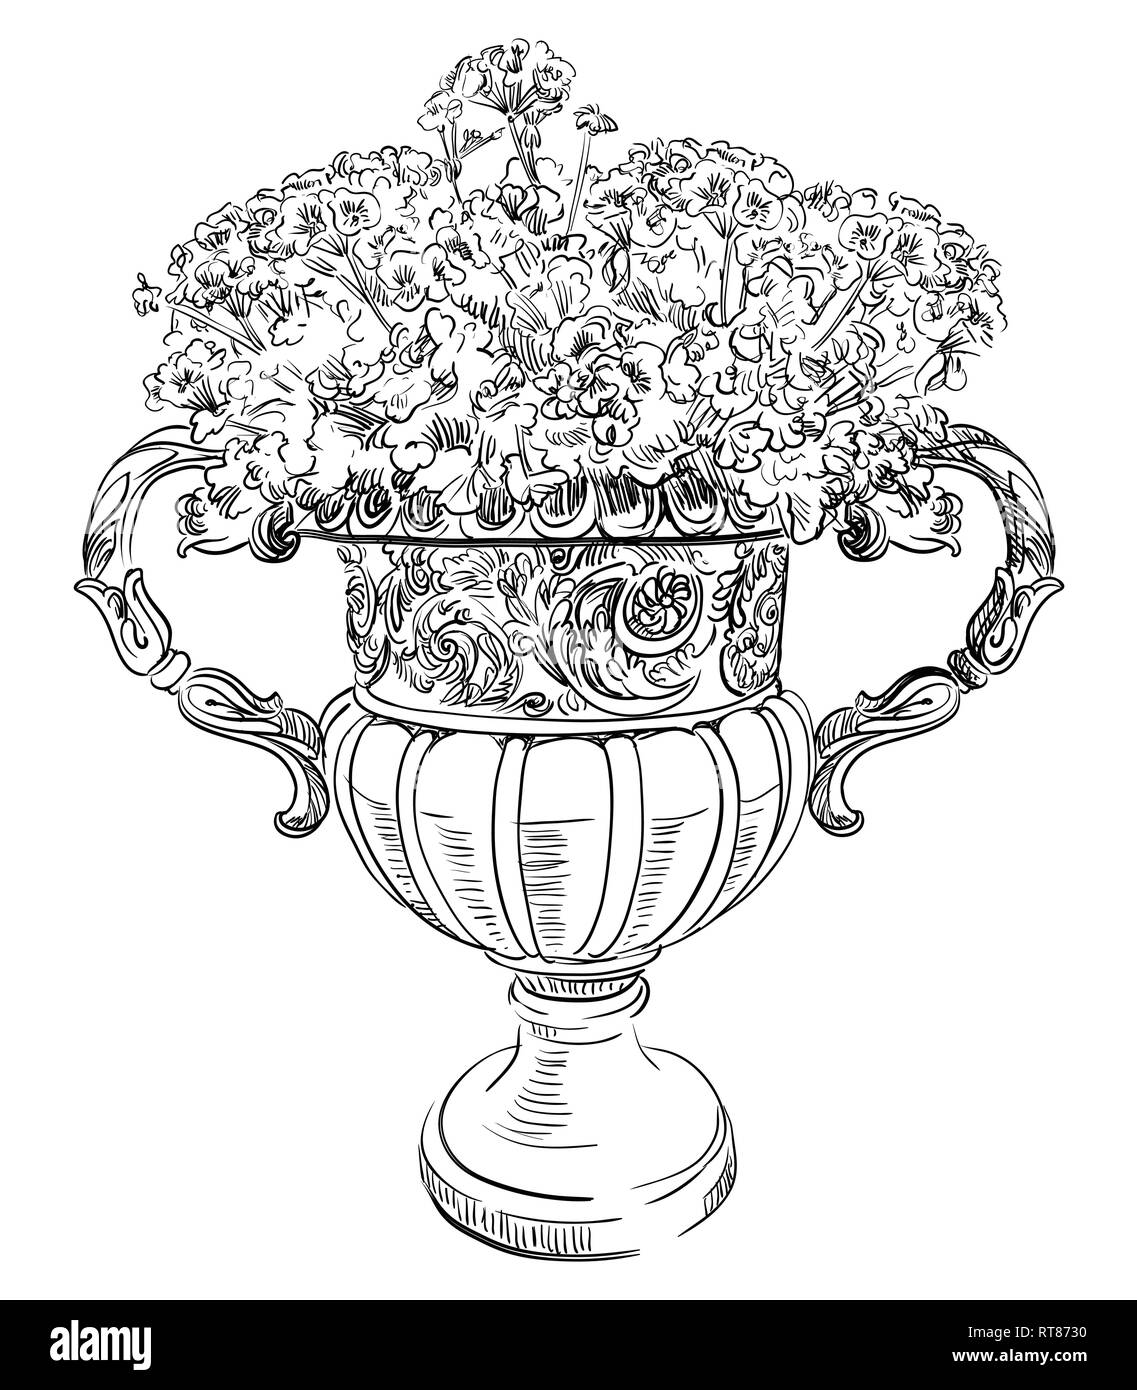 Alte schnitzerei Straße Vase mit Blumen Vektor hand Zeichnung Illustration in schwarzer Farbe auf weißem Hintergrund Stock Vektor